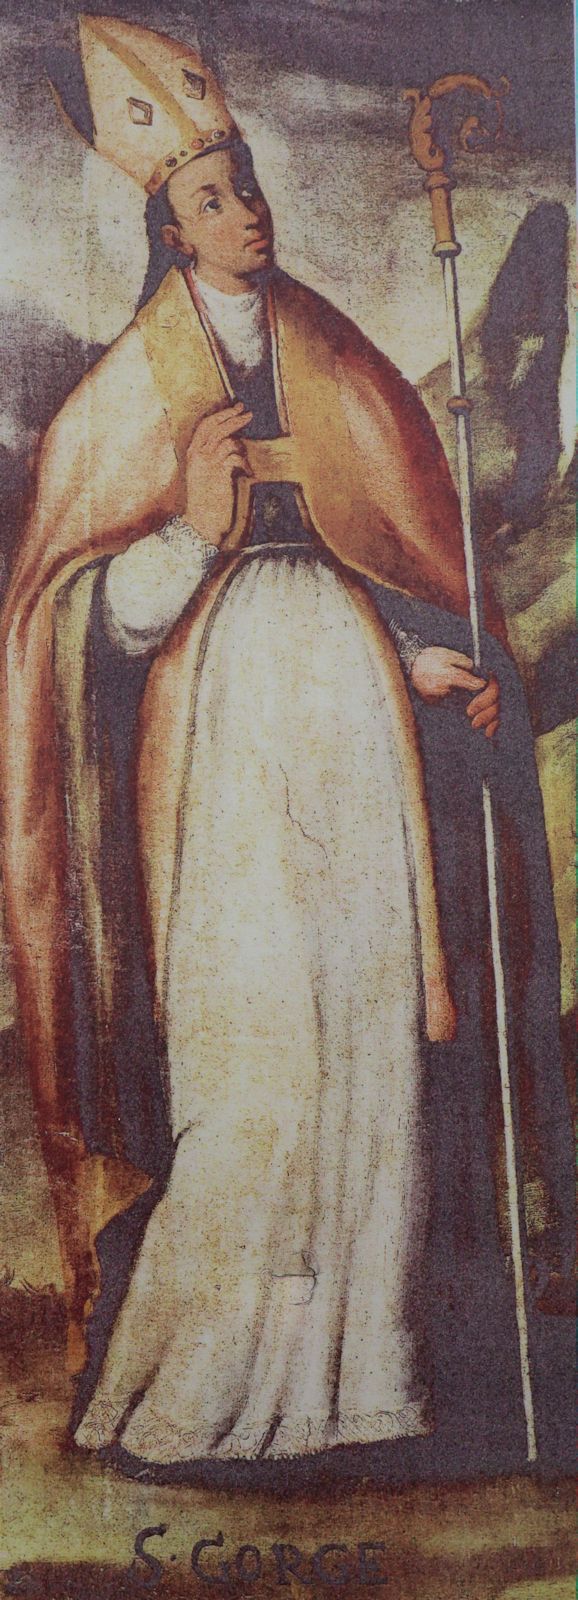 Gemälde in der ehemaligen Kathedrale, der heutigen Pfarrkirche in Suelli